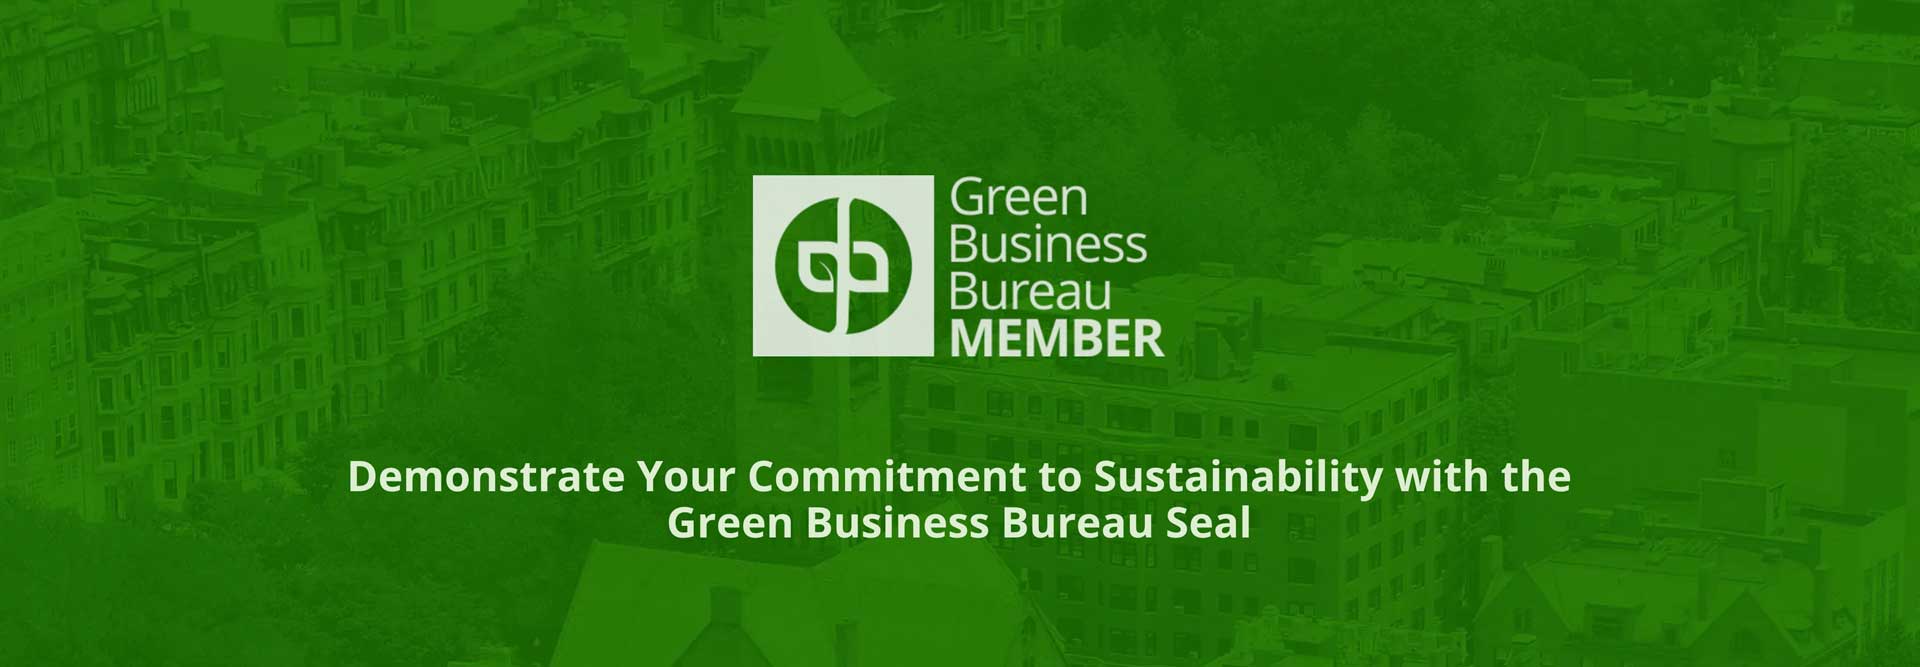 SYNLawn se une al Green Business Bureau